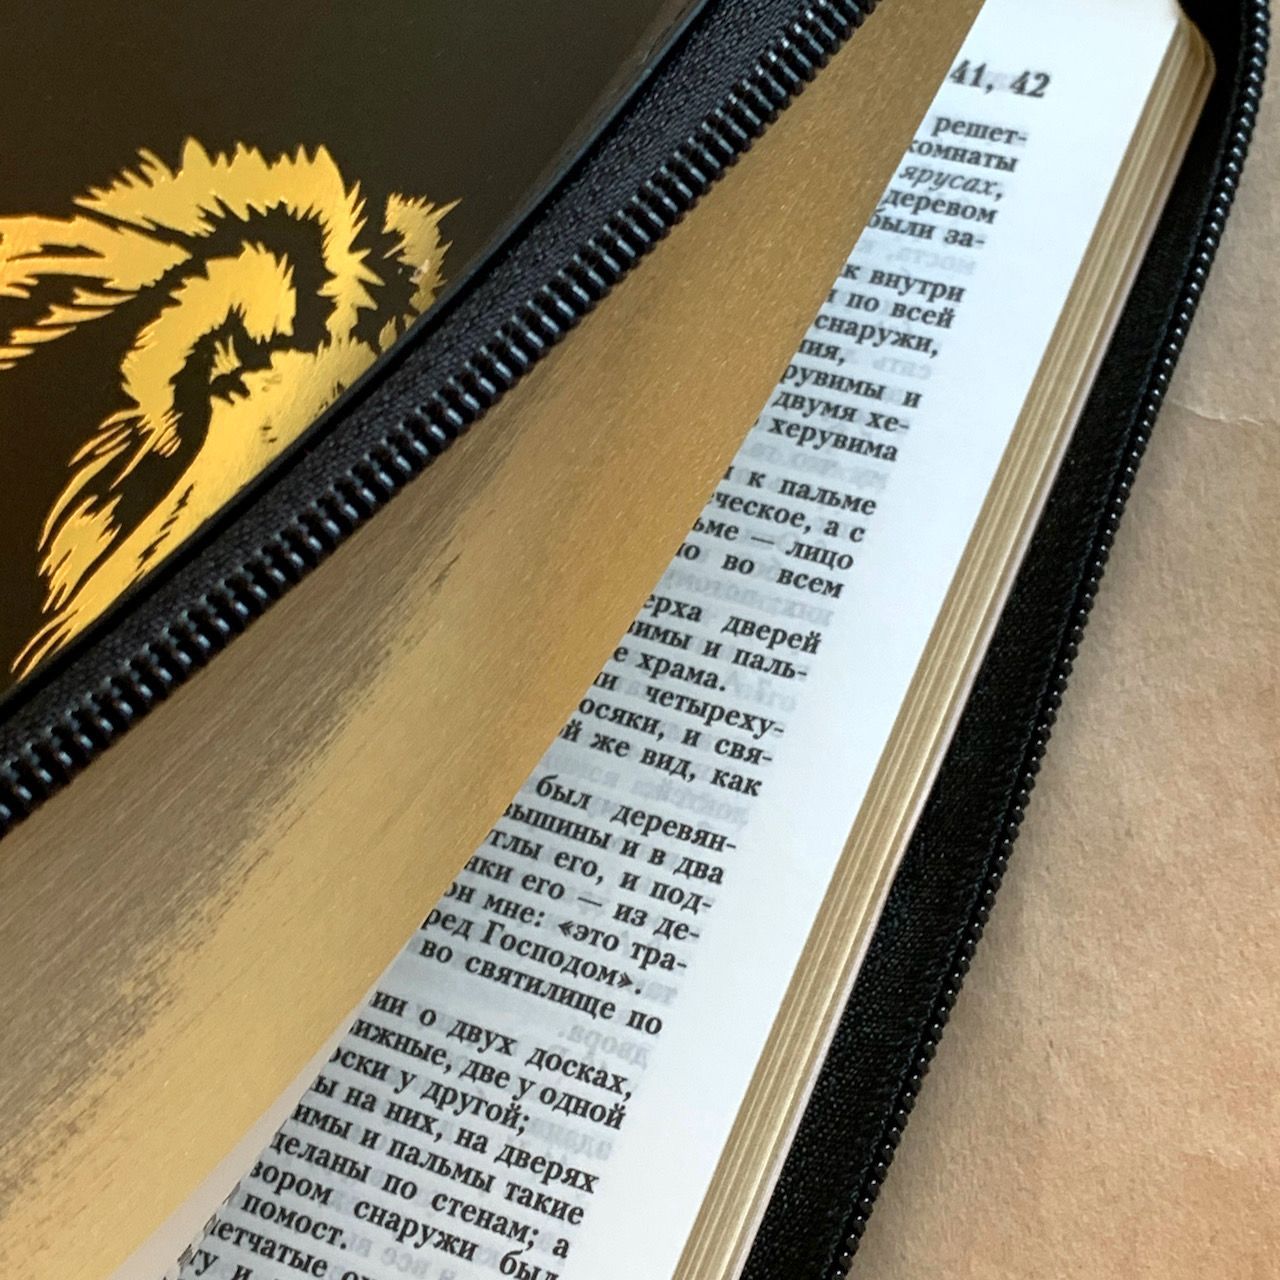 Библия 055z код I5 7118 переплет из натуральной кожи на молнии, цвет черный металлик, дизайн золотой лев, средний формат, 143*220 мм, паралельные места по центру страницы, золотой обрез, крупный шрифт